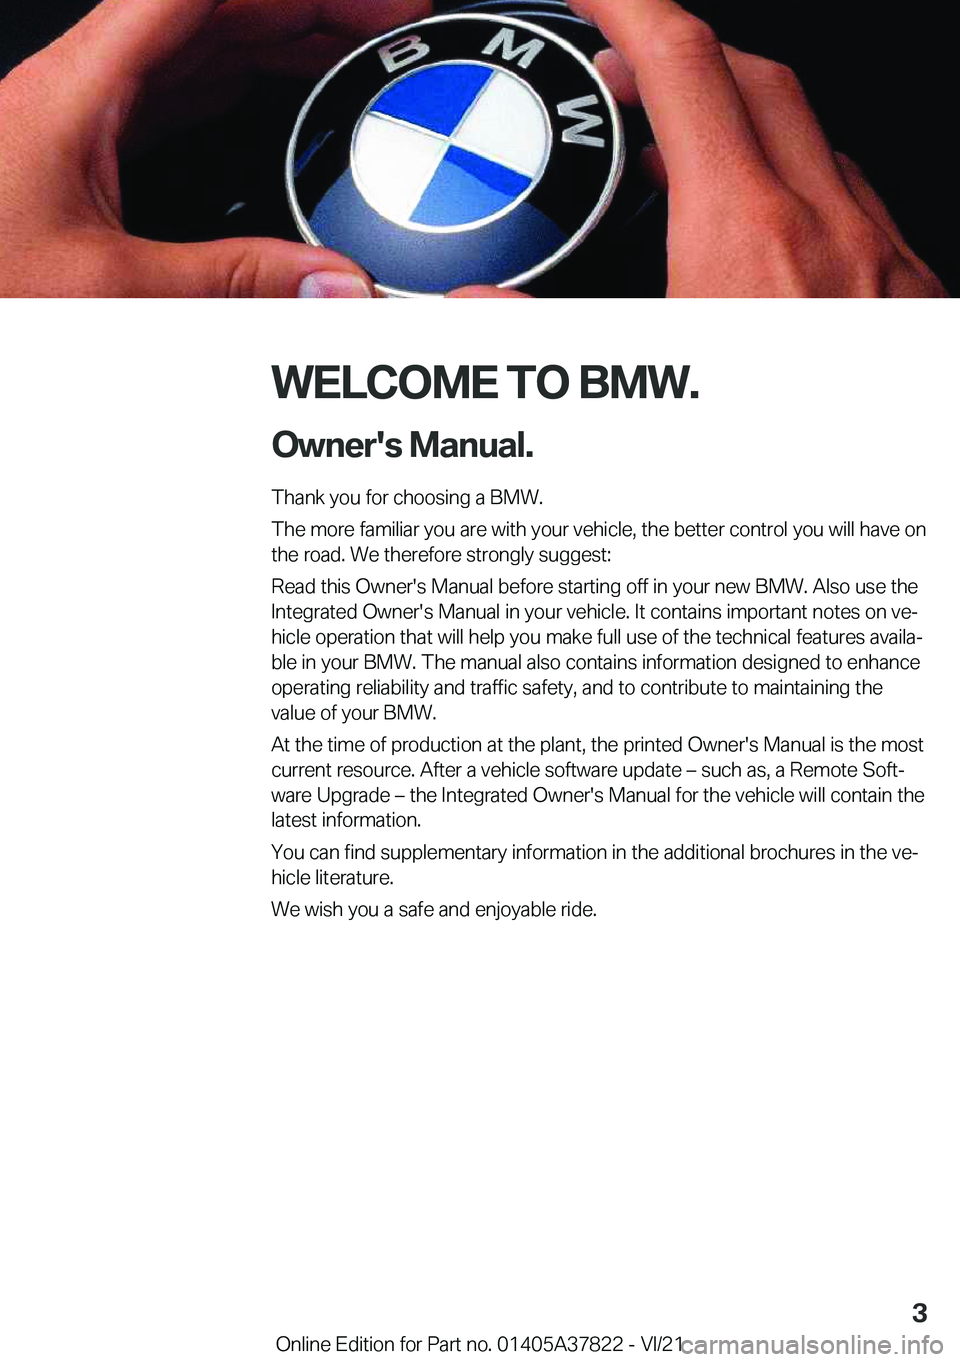 BMW X3 M 2022  Owners Manual �W�E�L�C�O�M�E��T�O��B�M�W�.�O�w�n�e�r�'�s��M�a�n�u�a�l�.
�T�h�a�n�k��y�o�u��f�o�r��c�h�o�o�s�i�n�g��a��B�M�W�.
�T�h�e��m�o�r�e��f�a�m�i�l�i�a�r��y�o�u��a�r�e��w�i�t�h��y�o�u�r��v�e